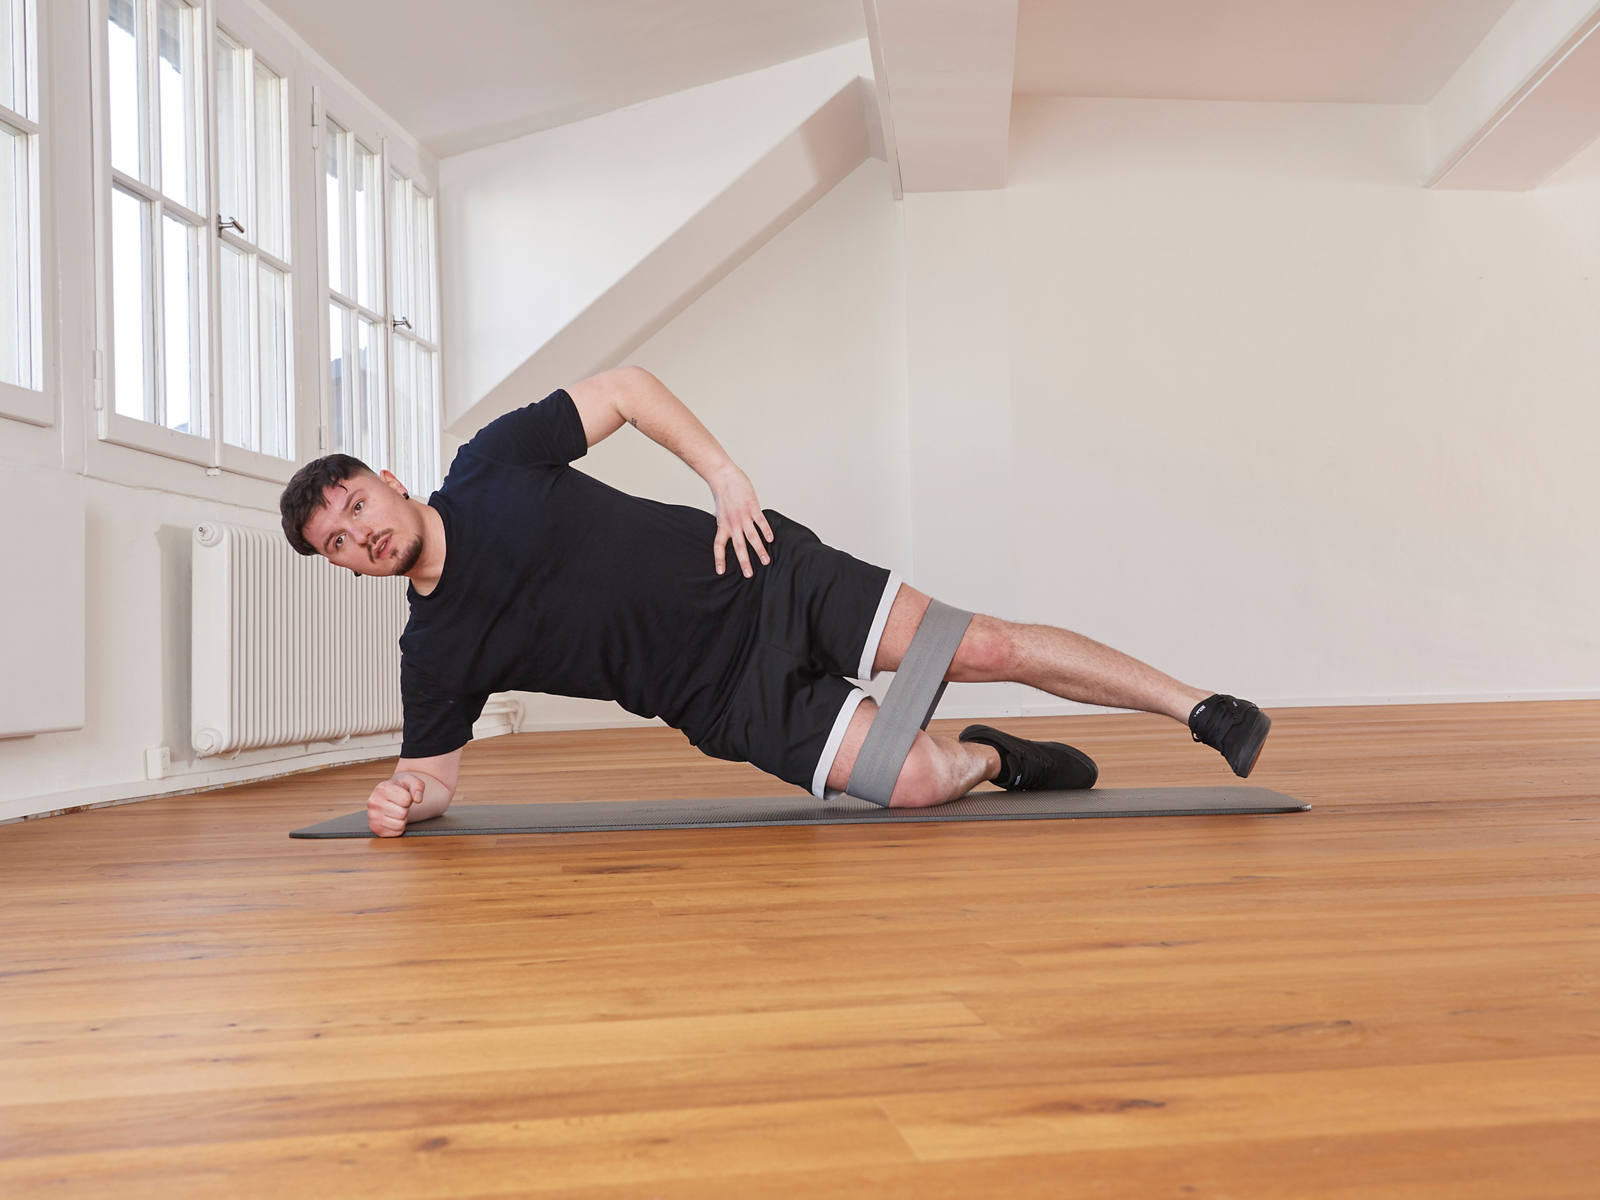 Exercices avec le mini-bande: planche latérale position 1